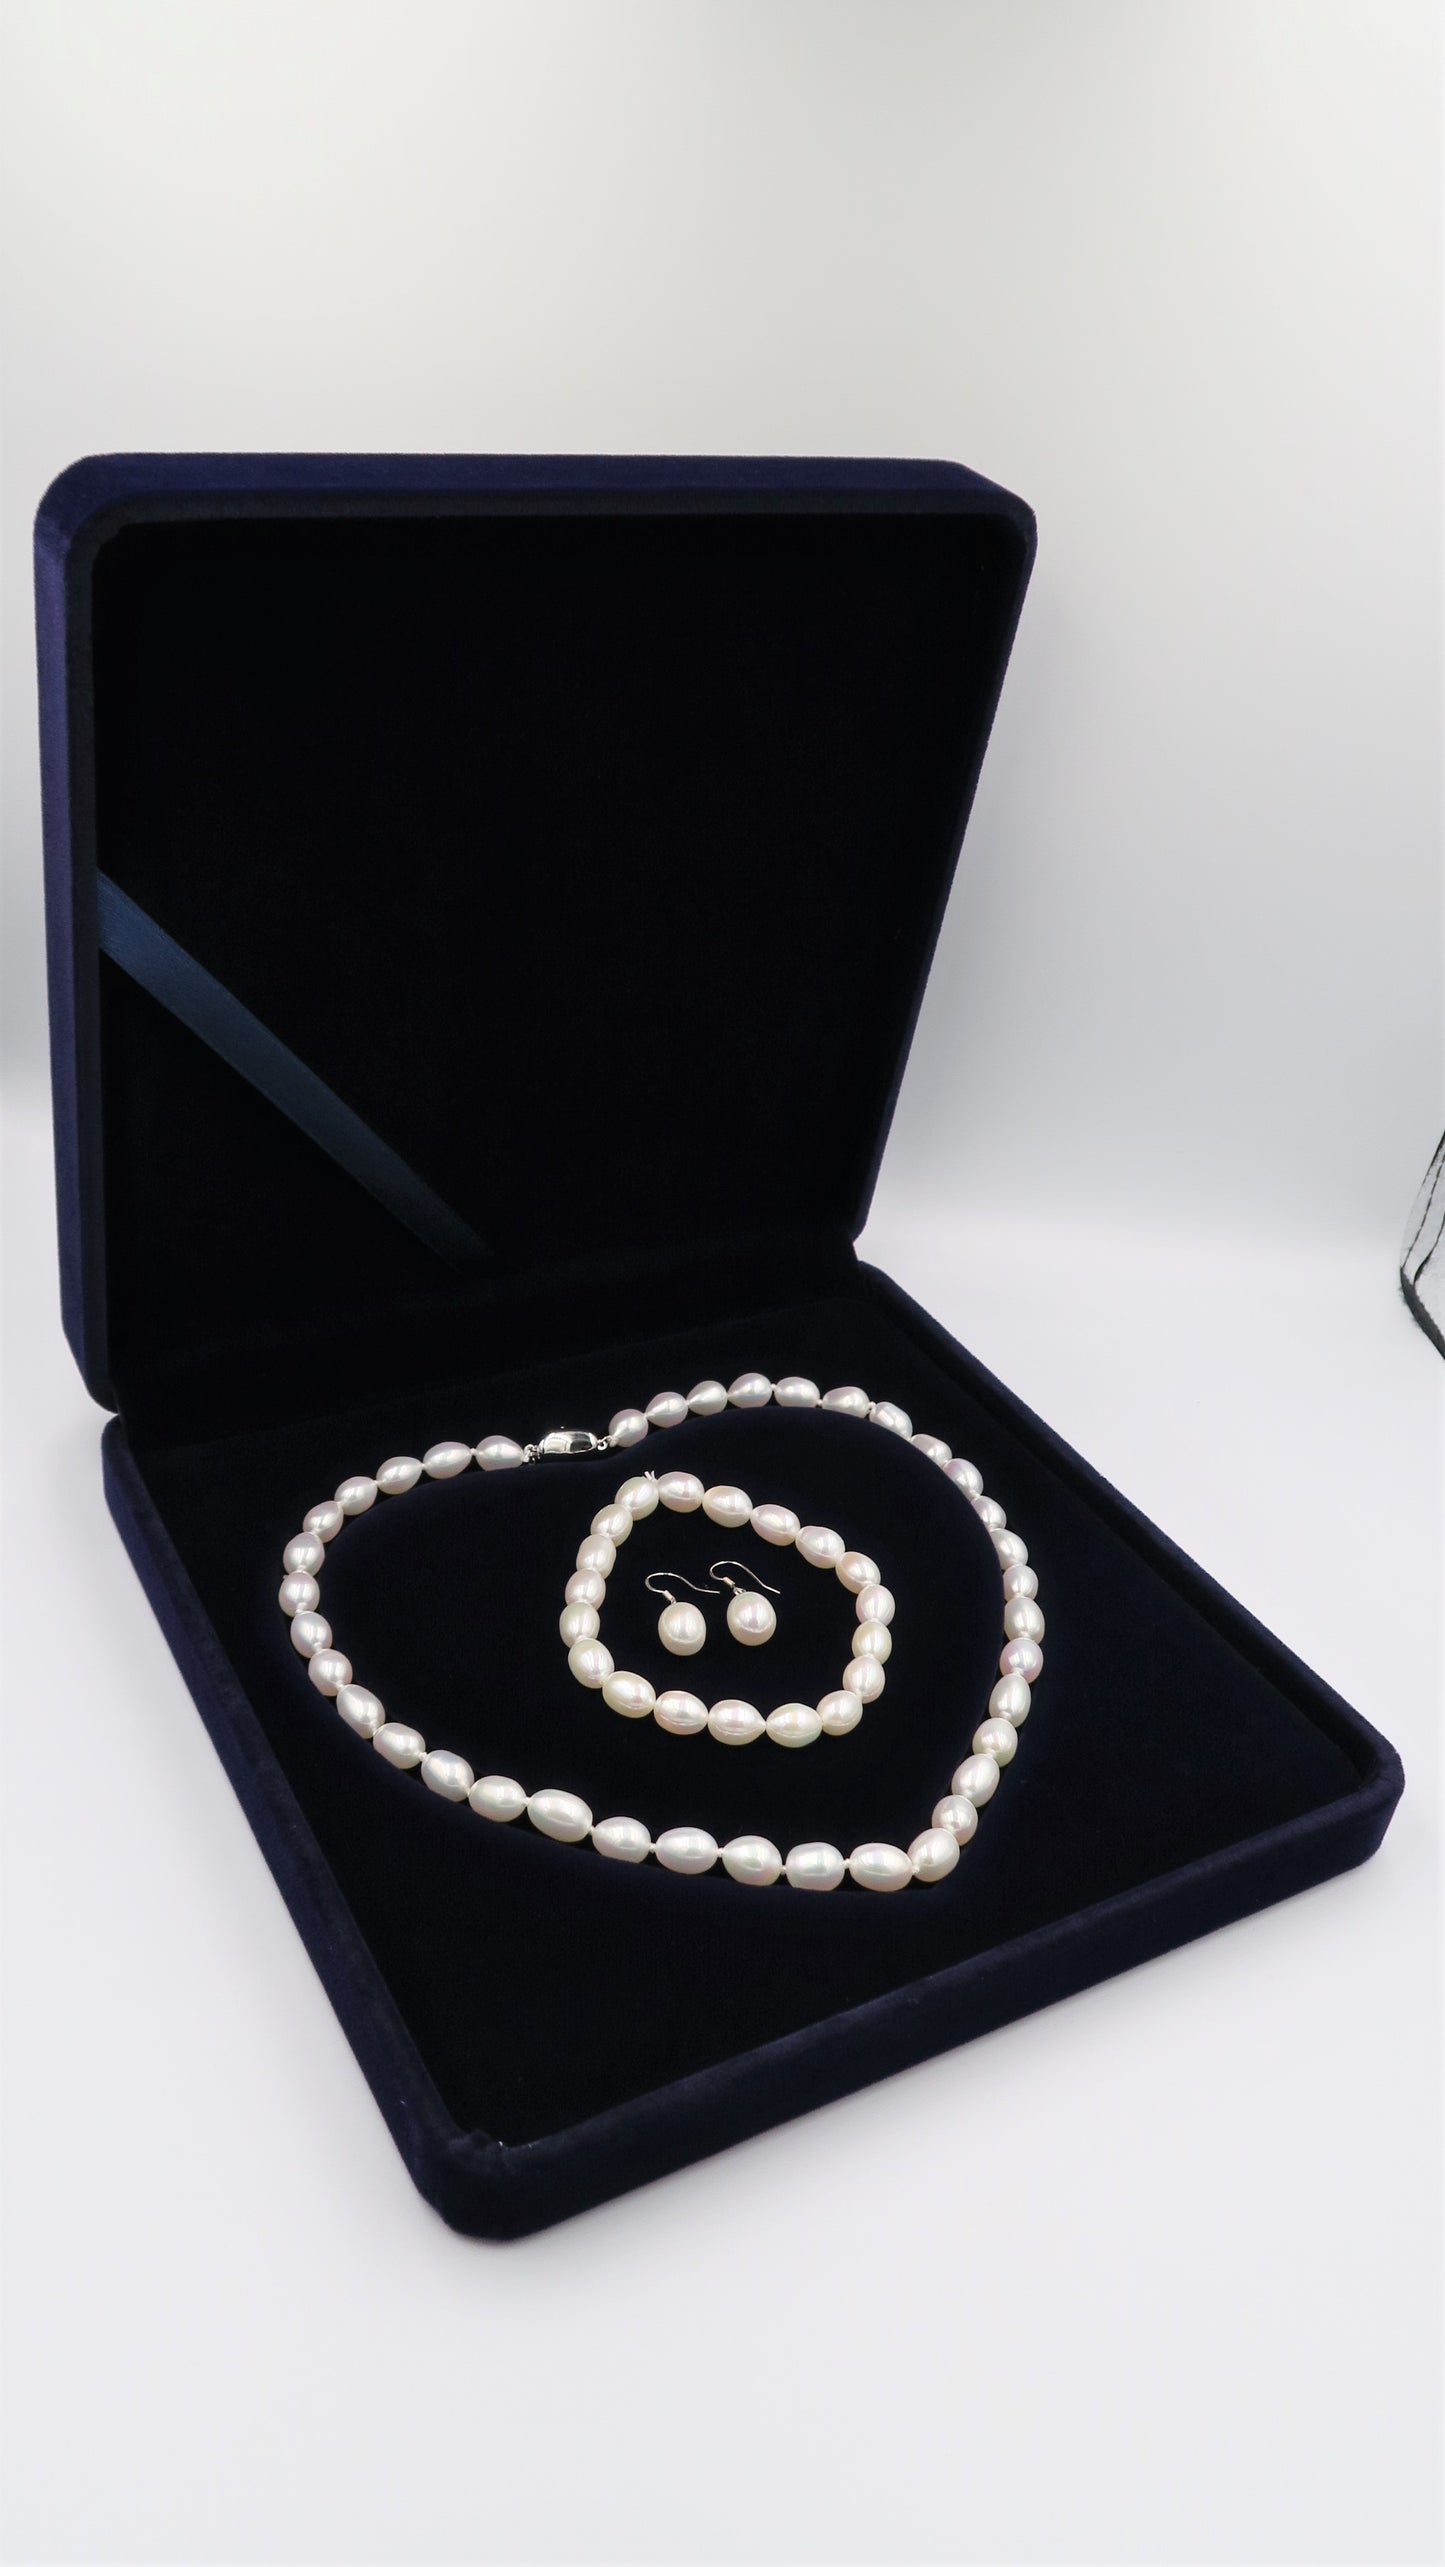 PC - Real Pearl Full Set White Necklace Bracelet Earring Celeste 925 Sterling Silver gift